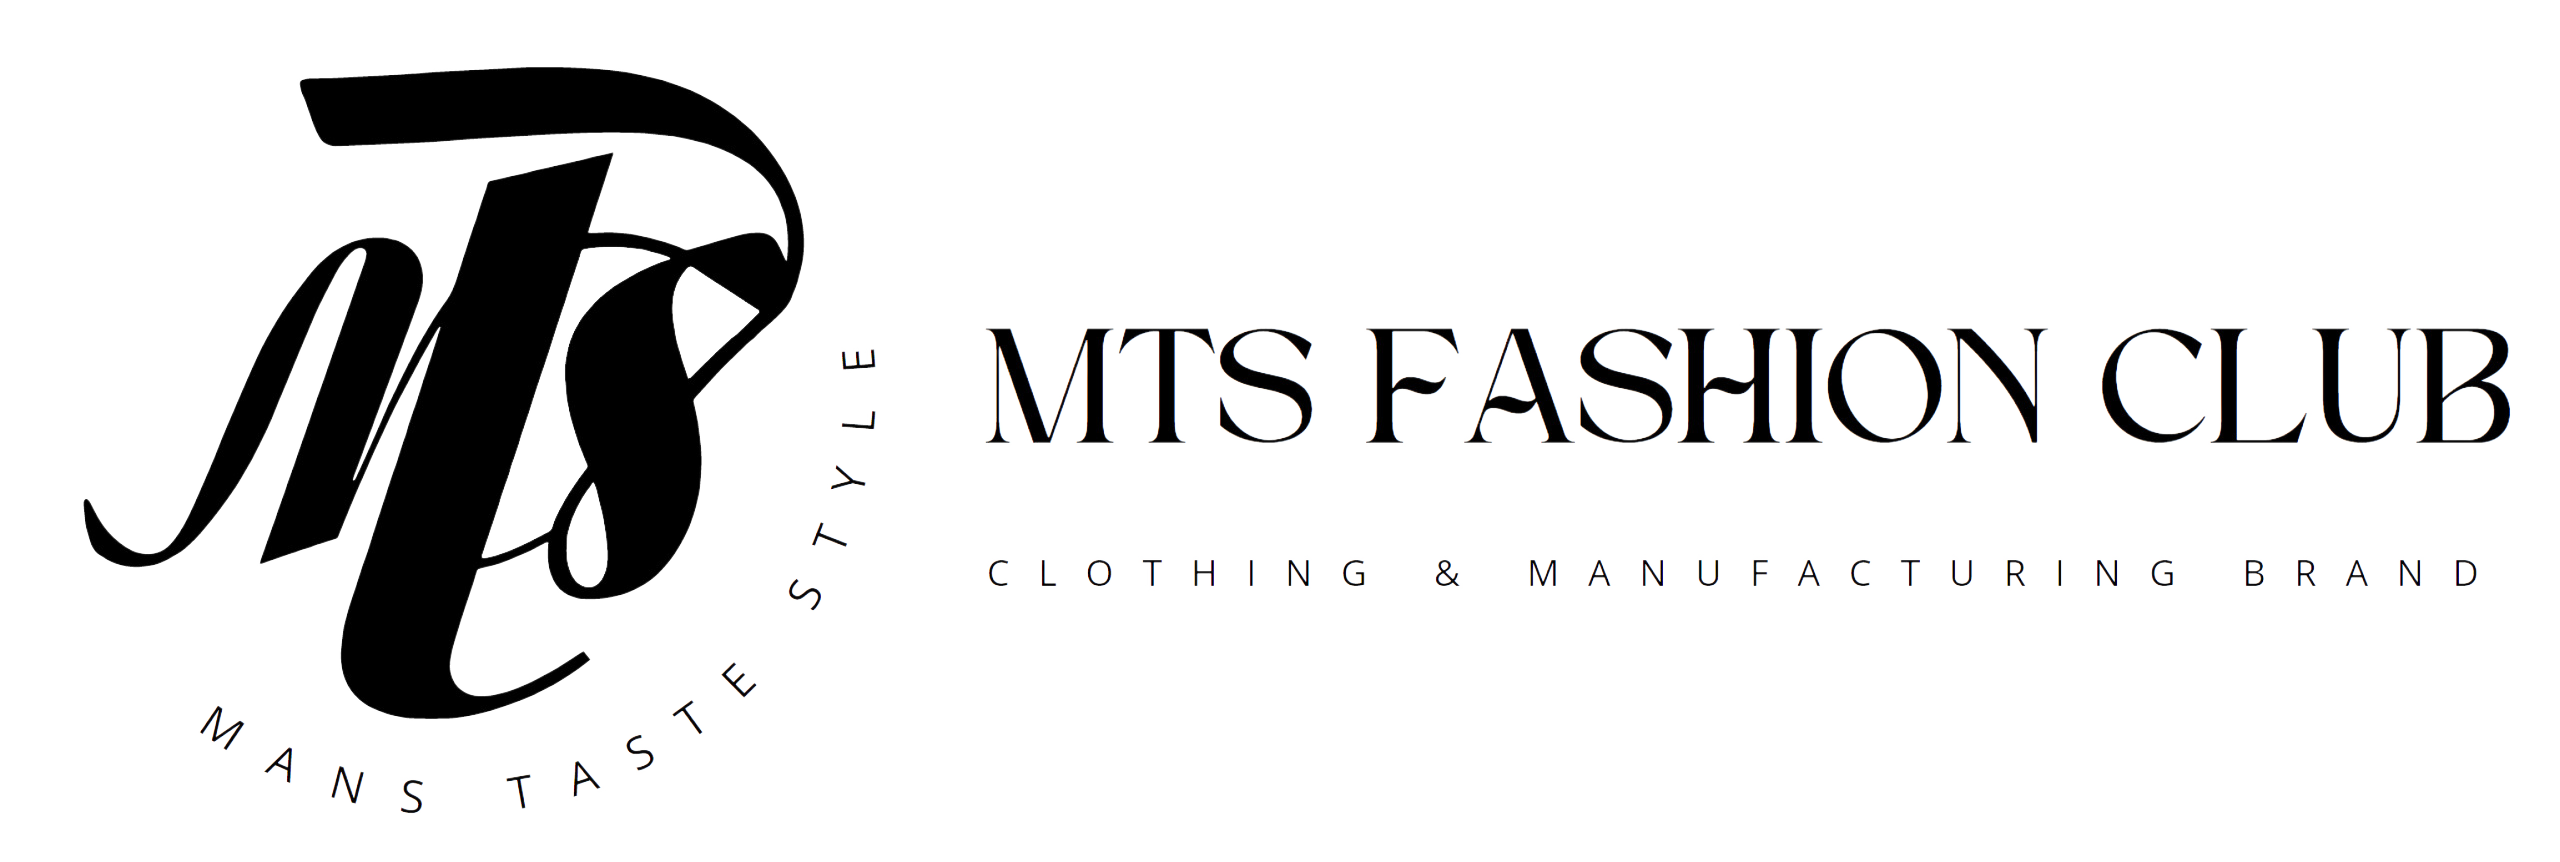 MTS Fashion Club